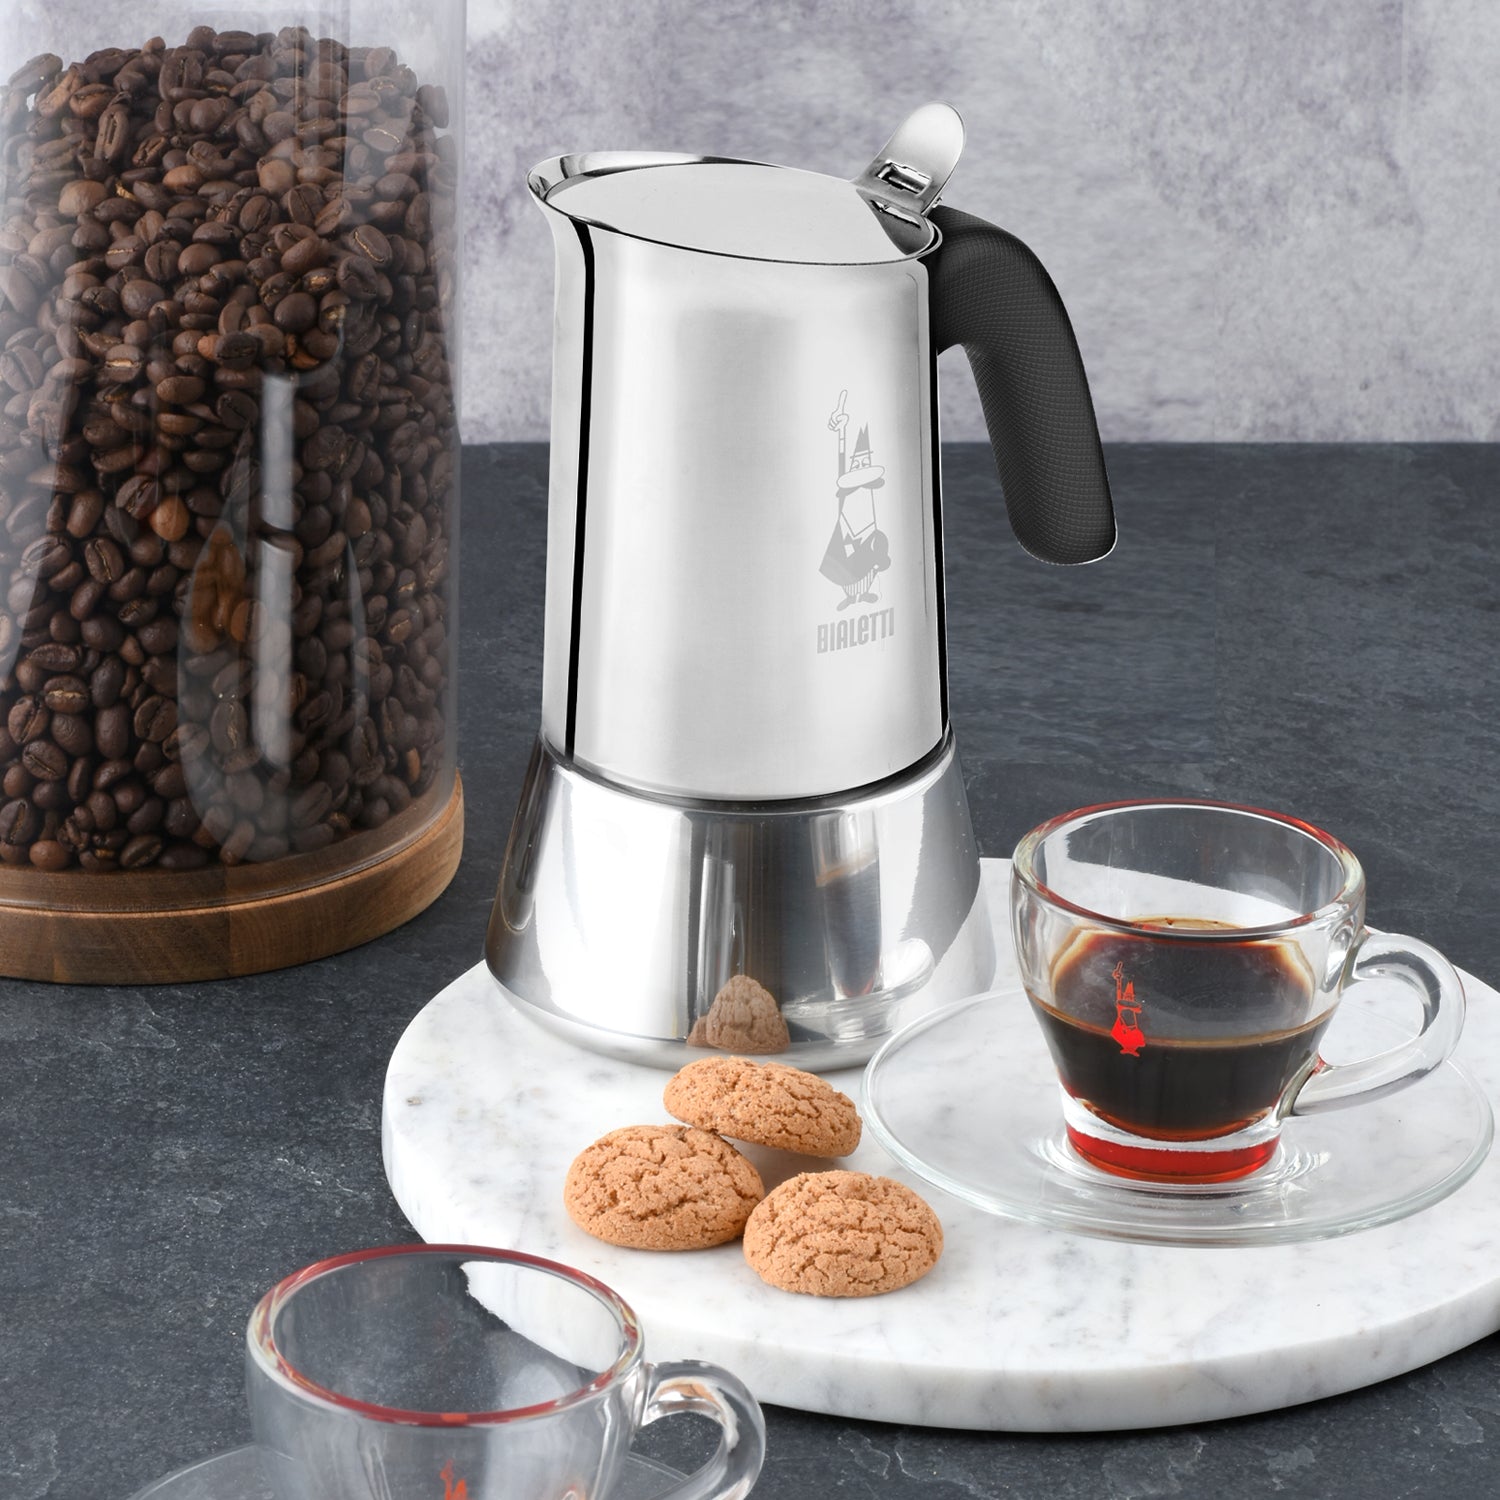 Inox Venus Italian Coffee Maker 6 Cups BIALETTI